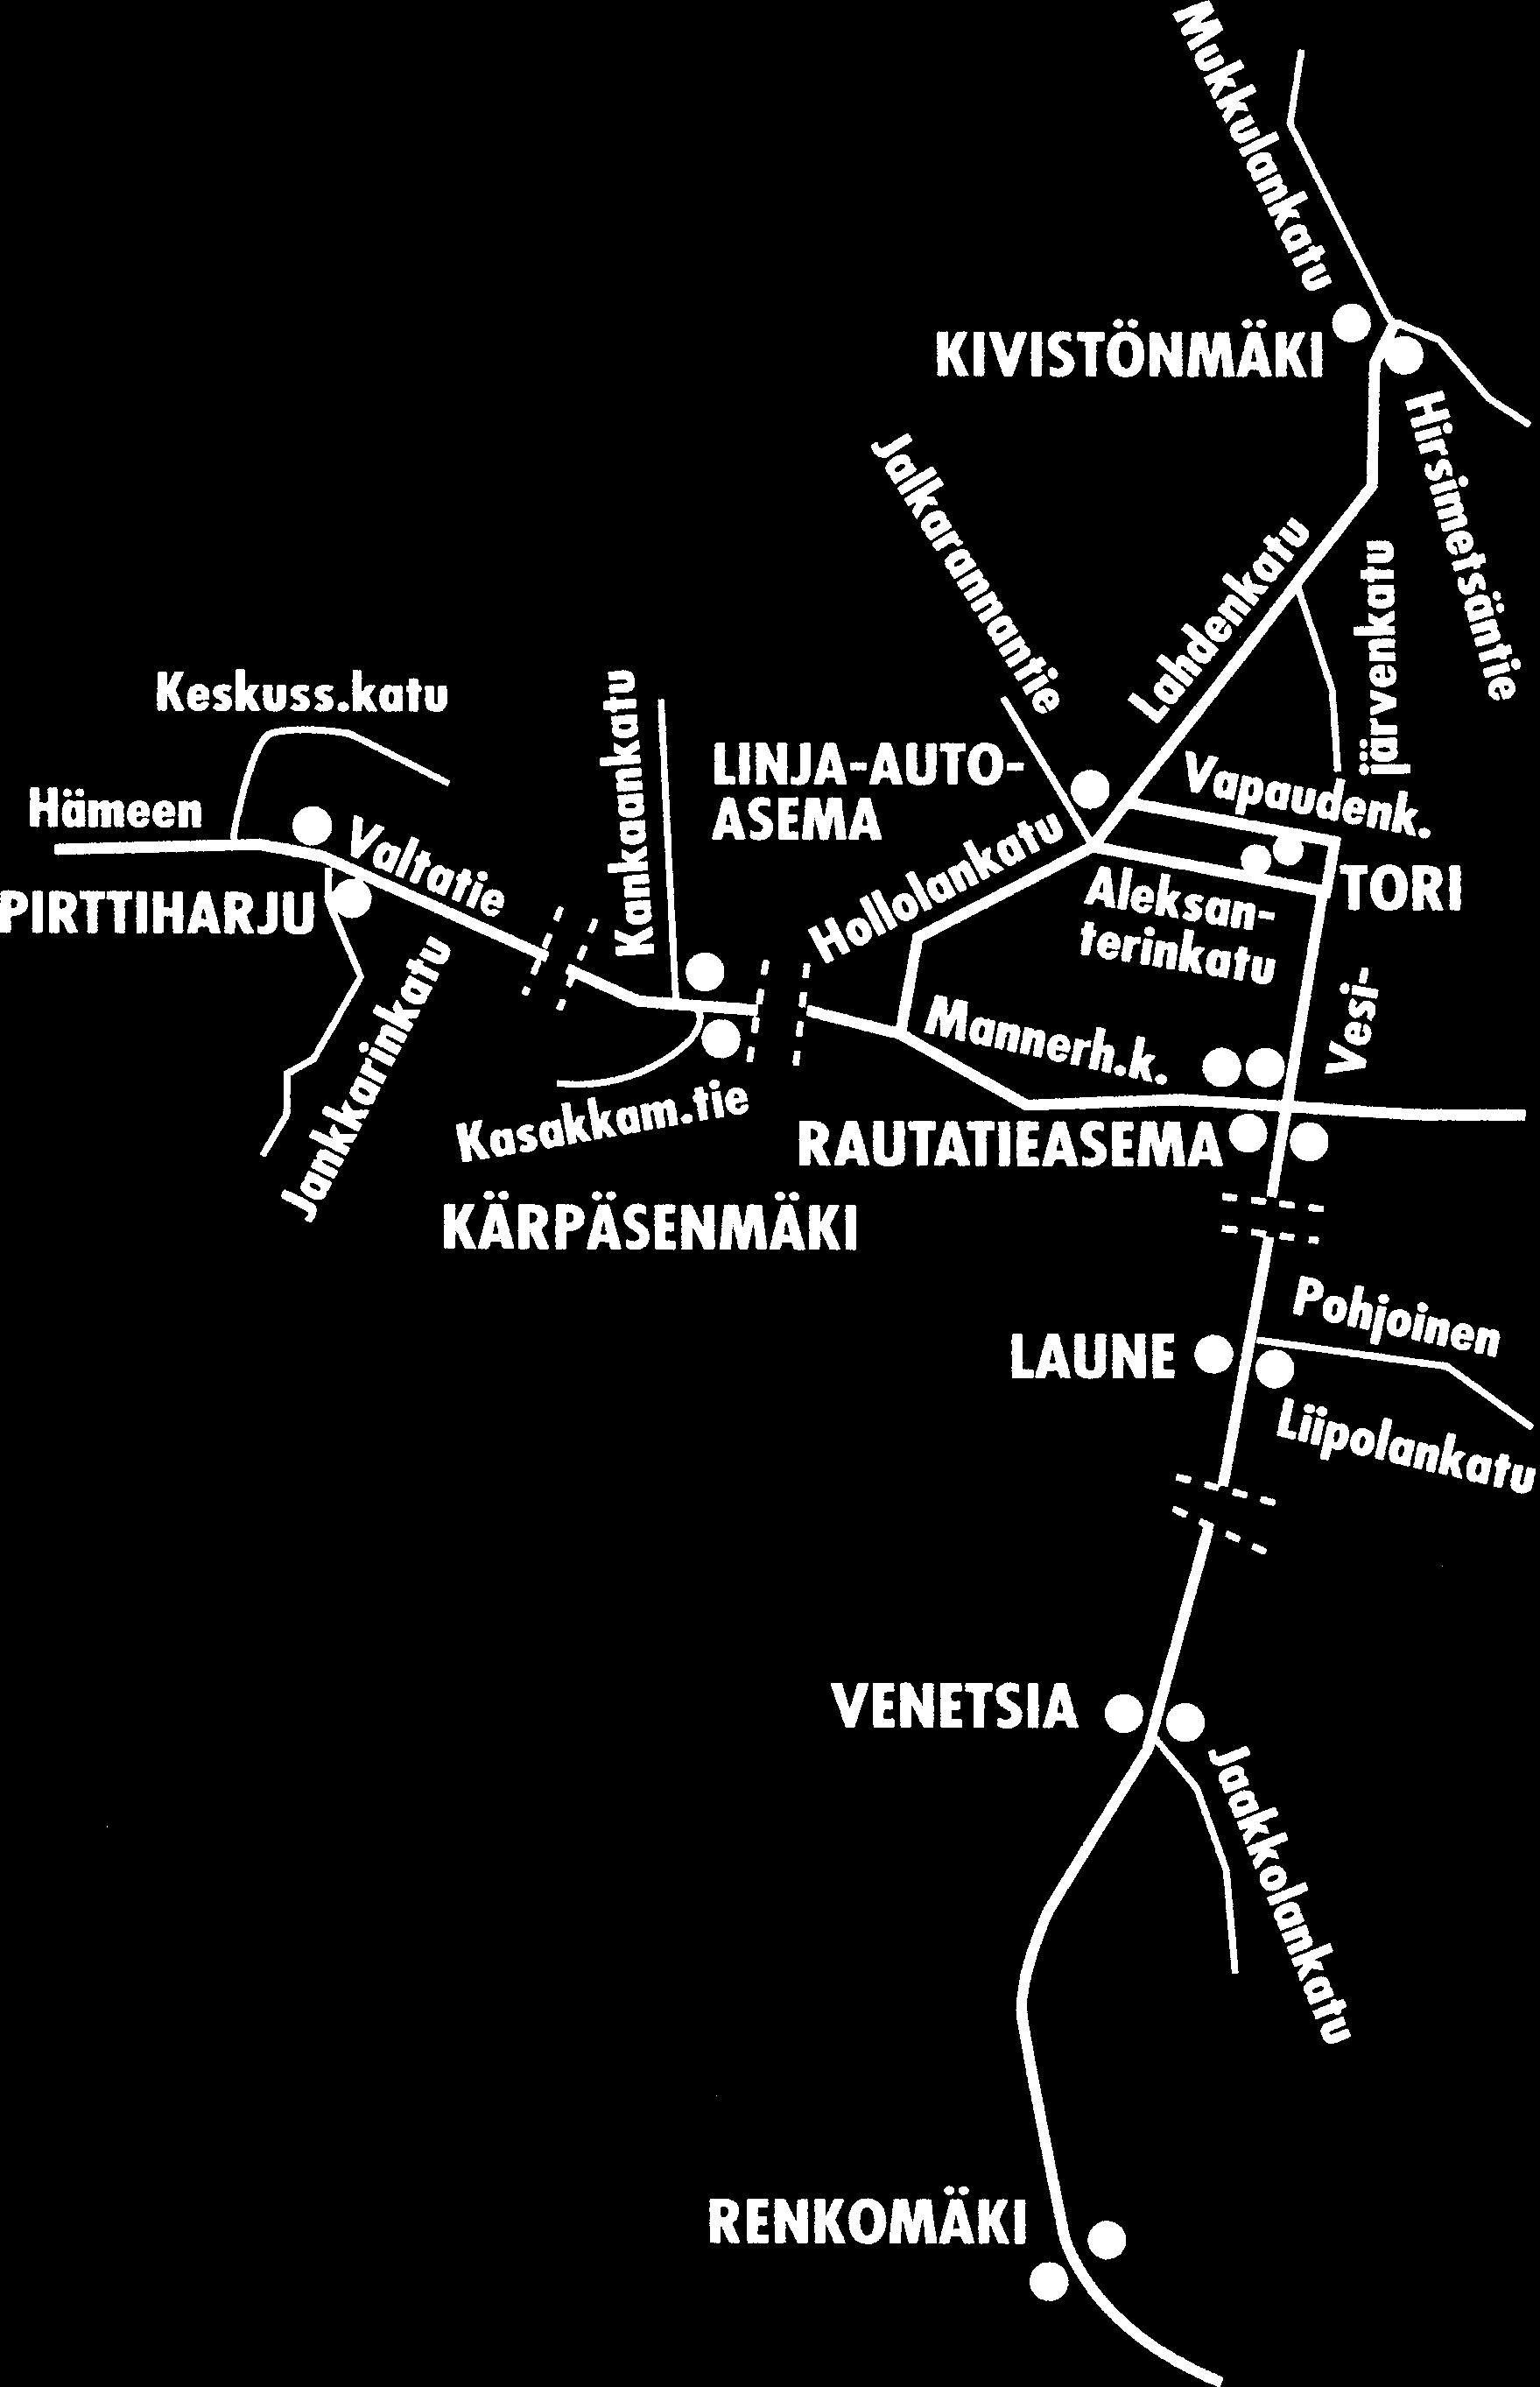 LAHTI Heinolan suunta: Kivistönmäki, Holma Kouvolan suunta: Rautatieasema Helsingin suunta: Tori, Rautatieasema,